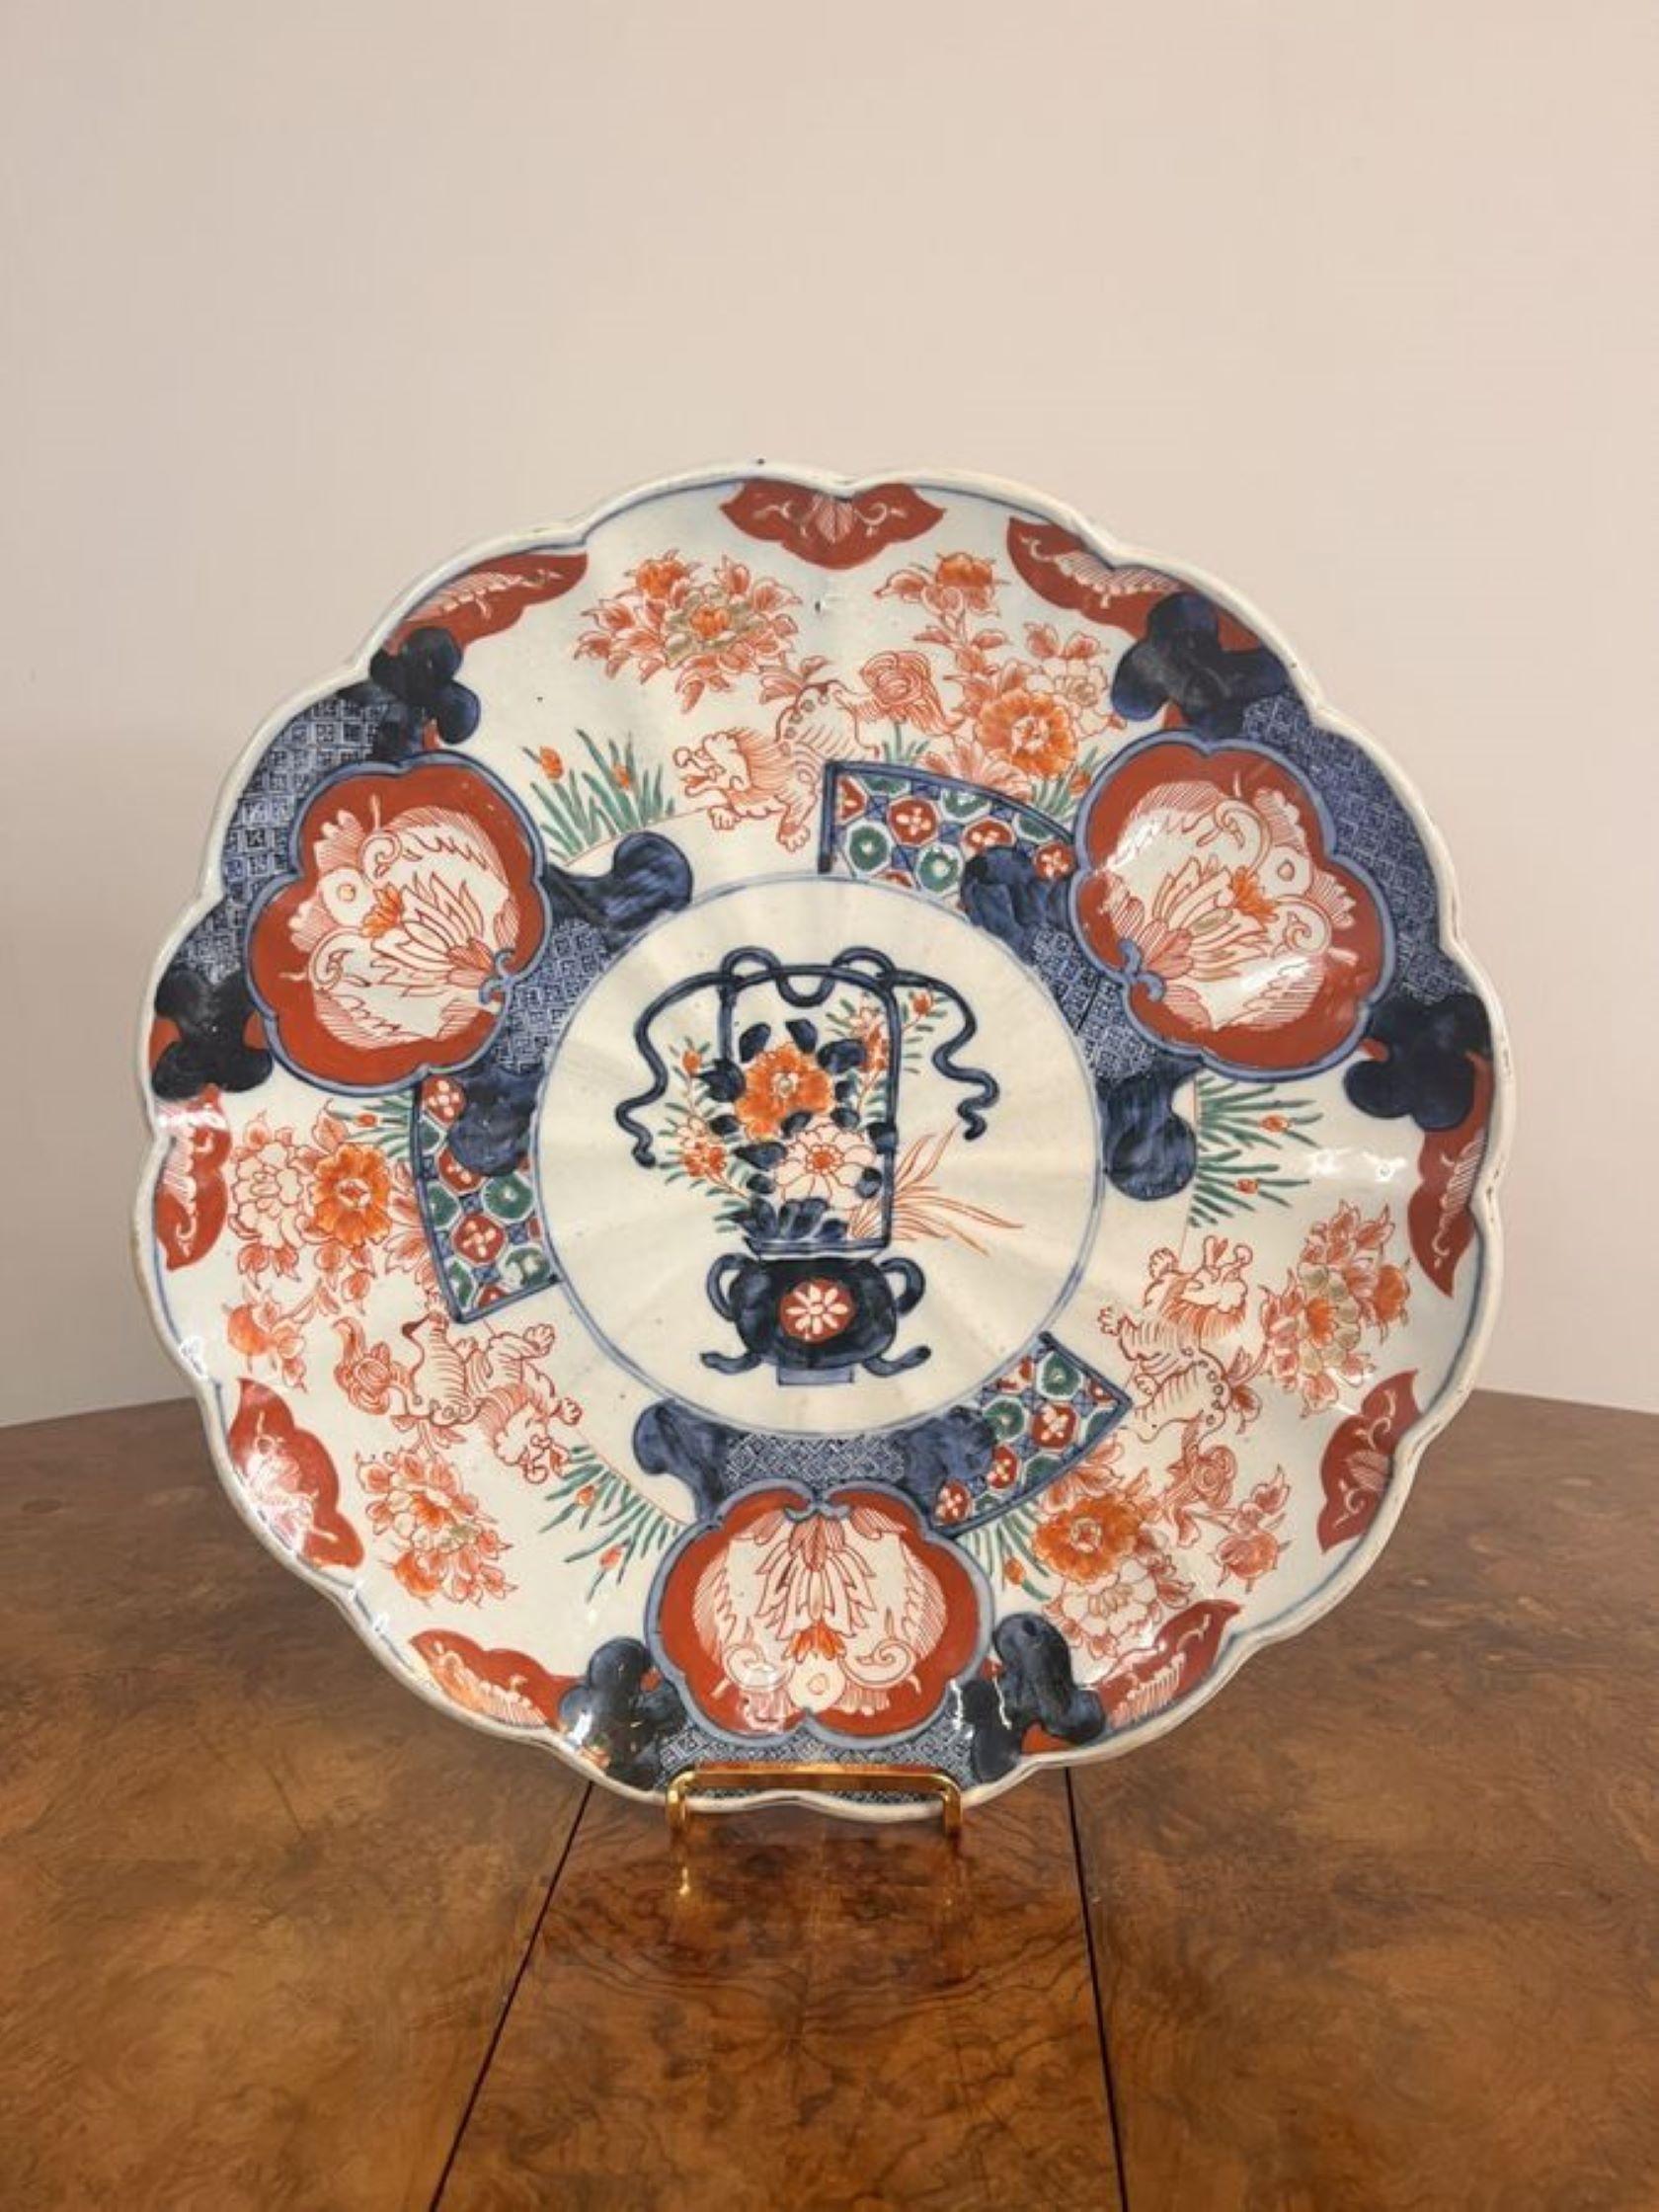 Hochwertiger antiker japanischer Imari-Teller, der in der Mitte mit einem Blumenkorb verziert ist, umgeben von handgemalten Blumen, Blättern, Bäumen und Mustern in blauen, roten, grünen und weißen Farben.

D. 1900